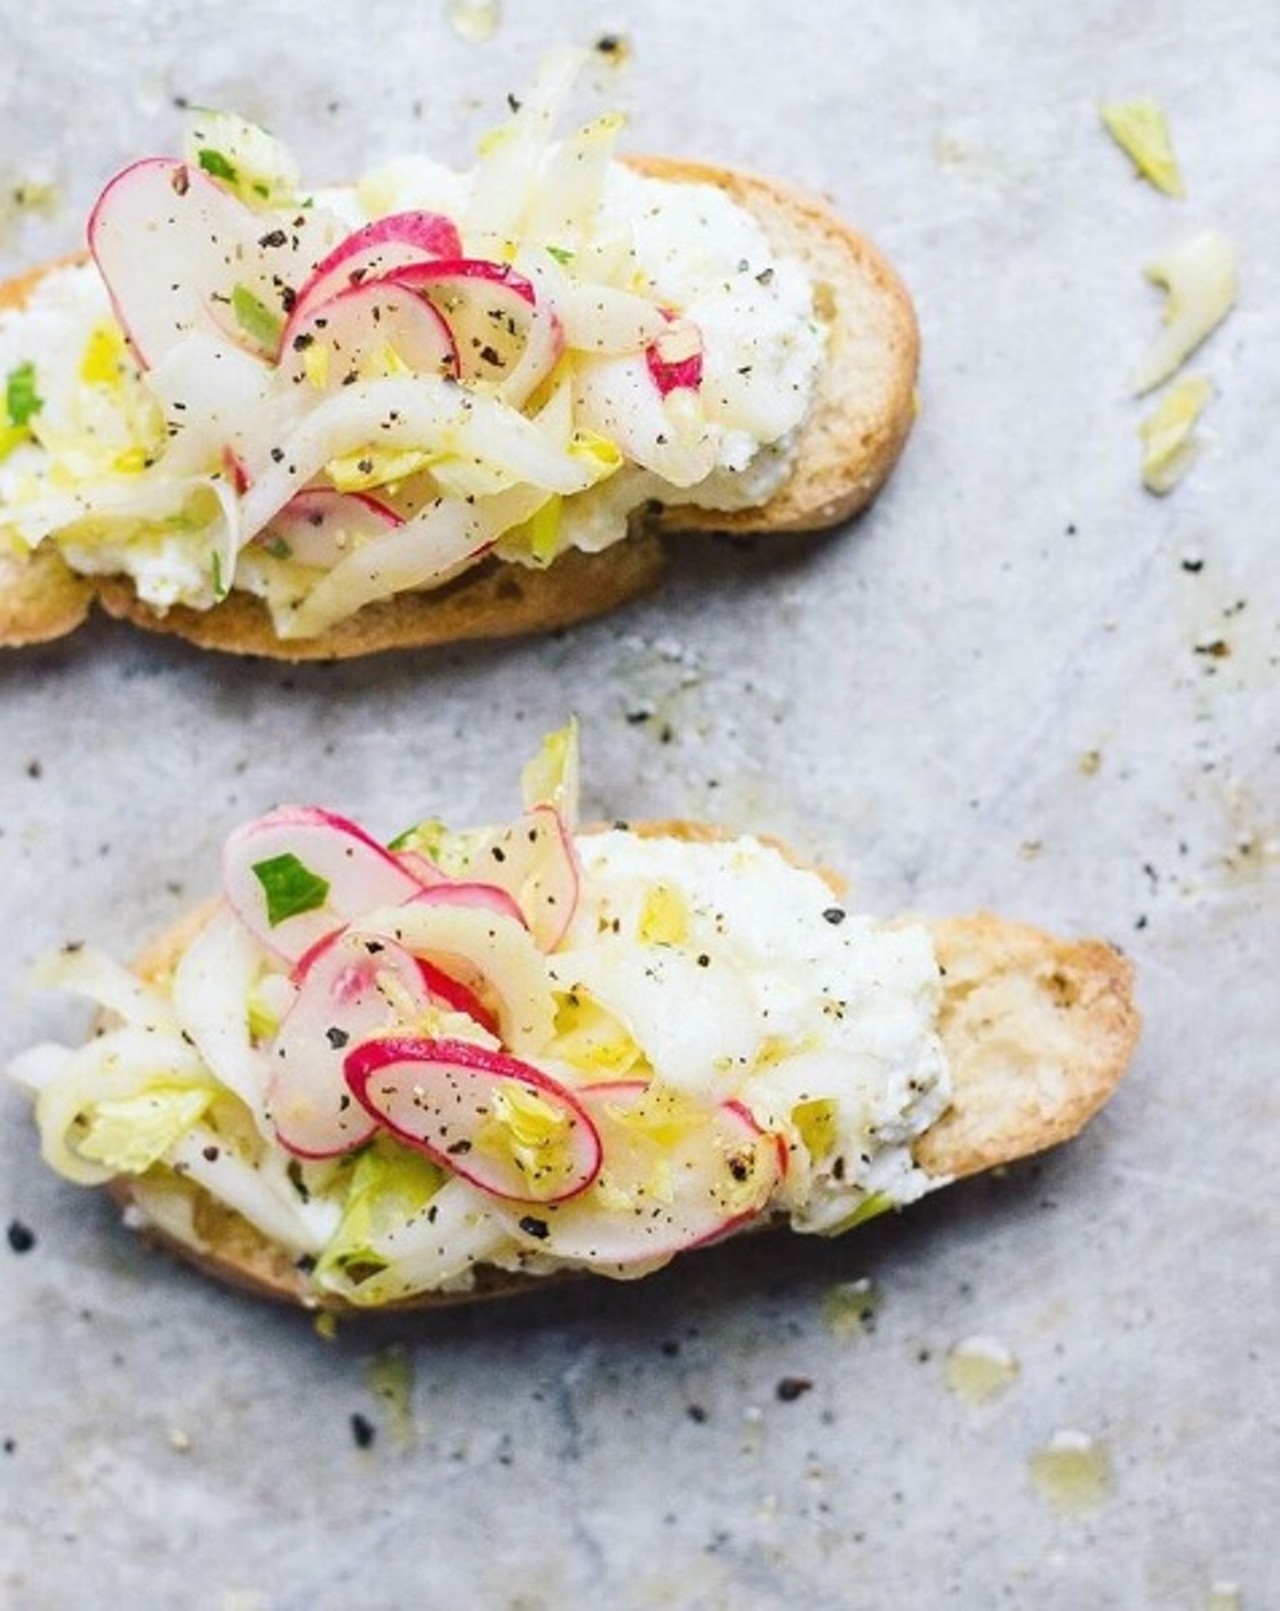 Endive radish salad with lemony vinaigrette on toast. Photo courtesy of Instagram / withfoodandlove.